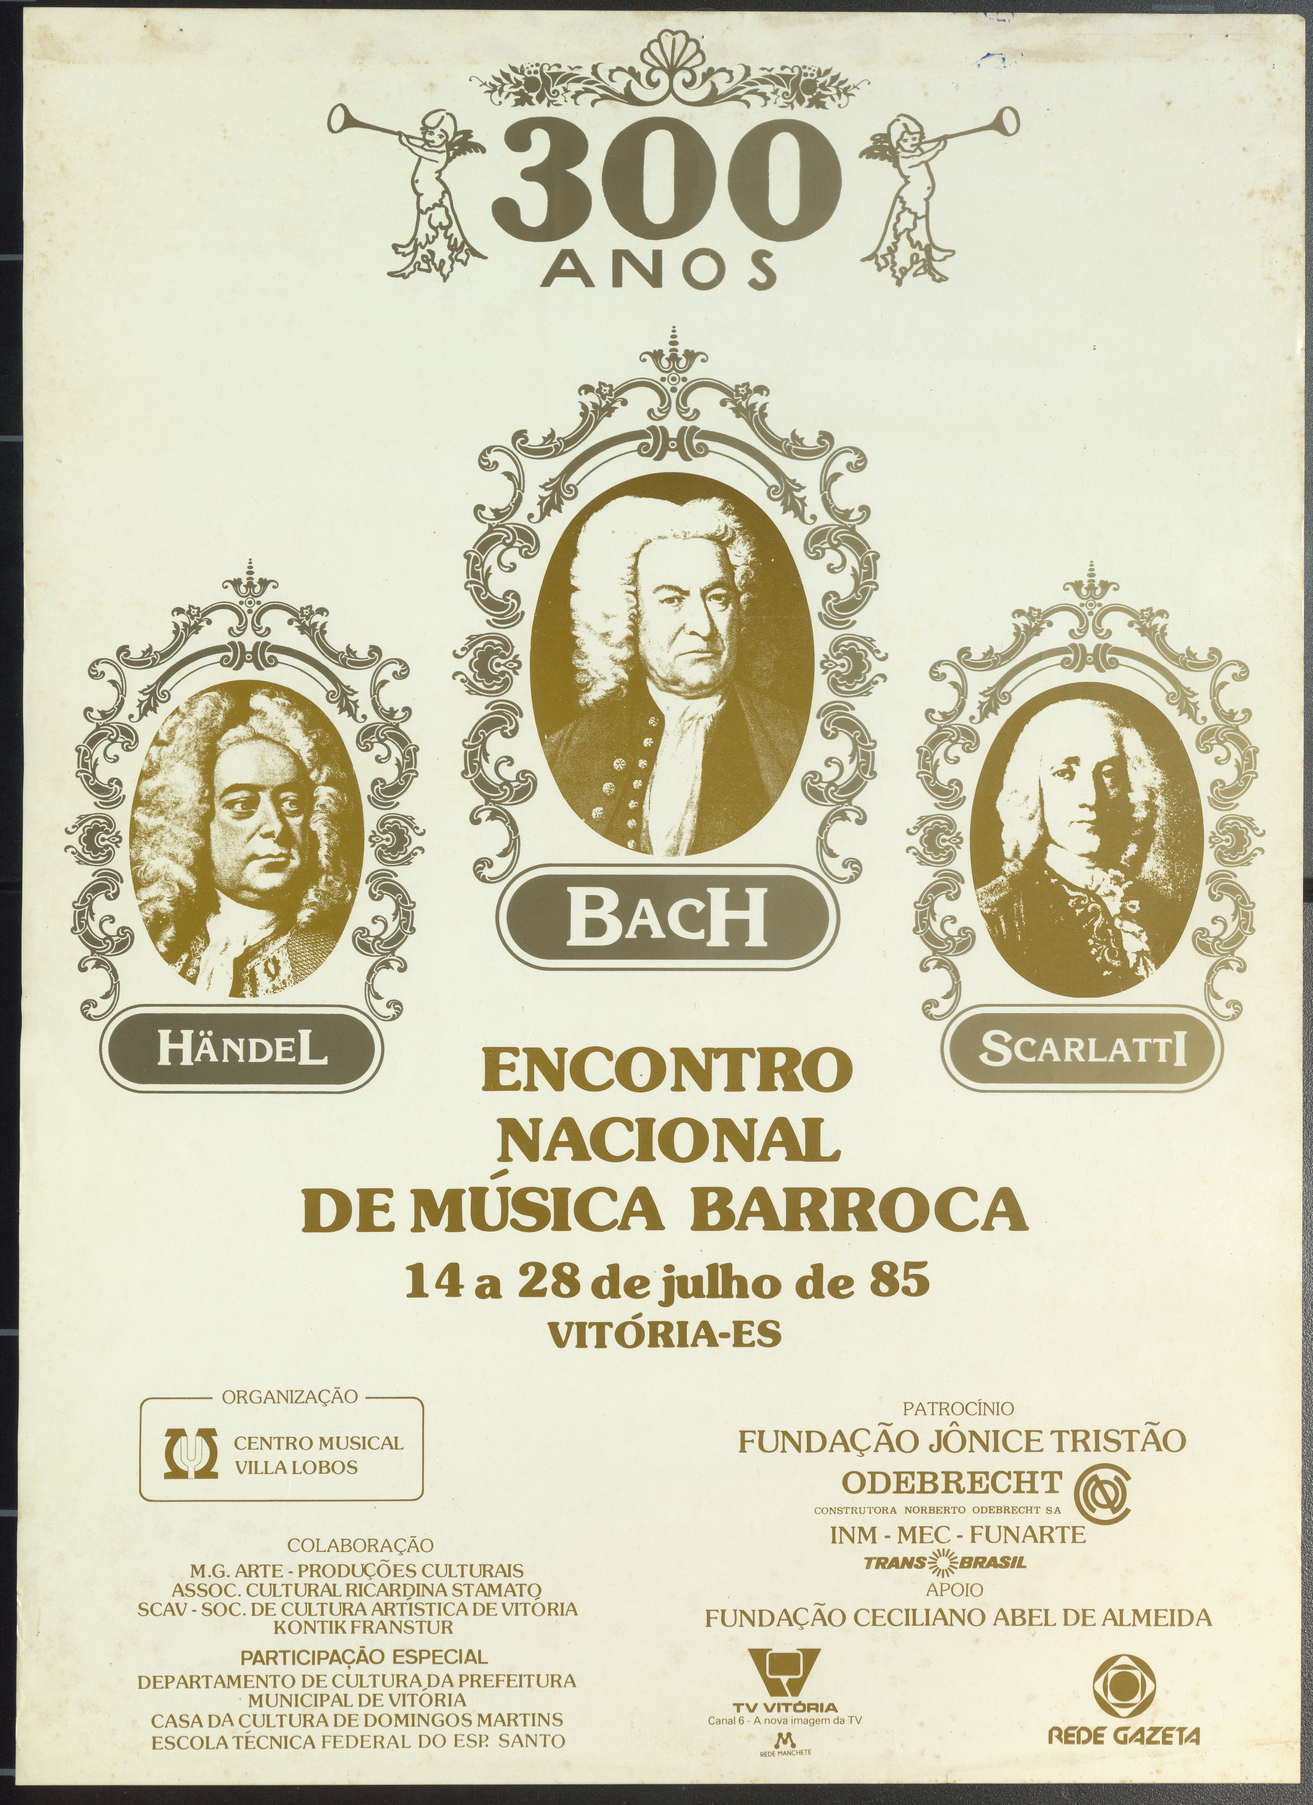 Encontro Nacional de Música Barroca - Cartaz comemorativo 300 anos – Händel, Bach e Scarlatti - Fotografias dos três músicos